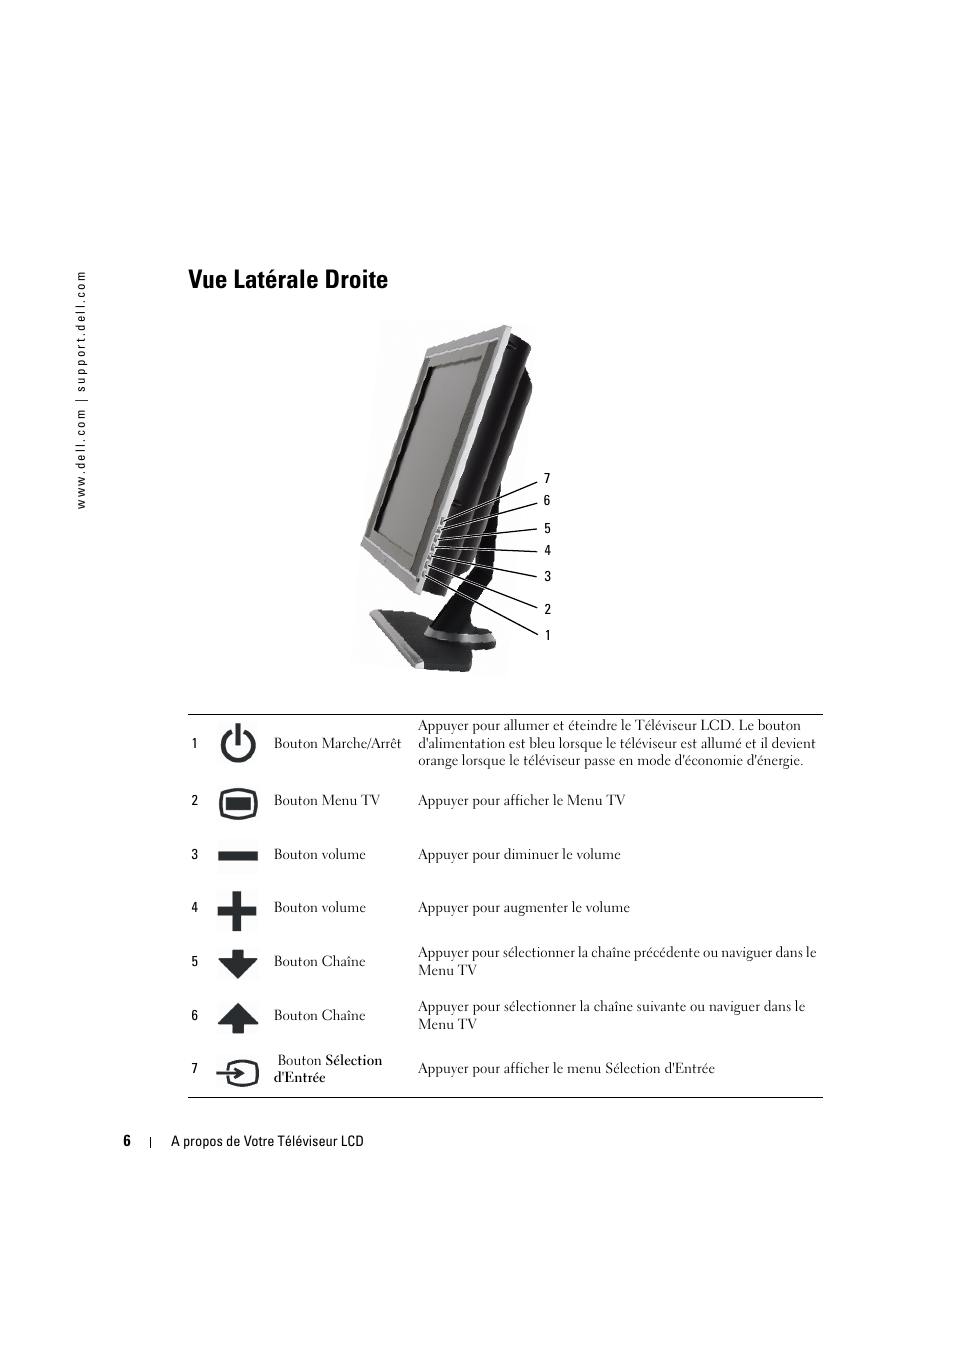 Vue latérale droite | Dell LCD TV W2606C Manuel d'utilisation | Page 6 / 60